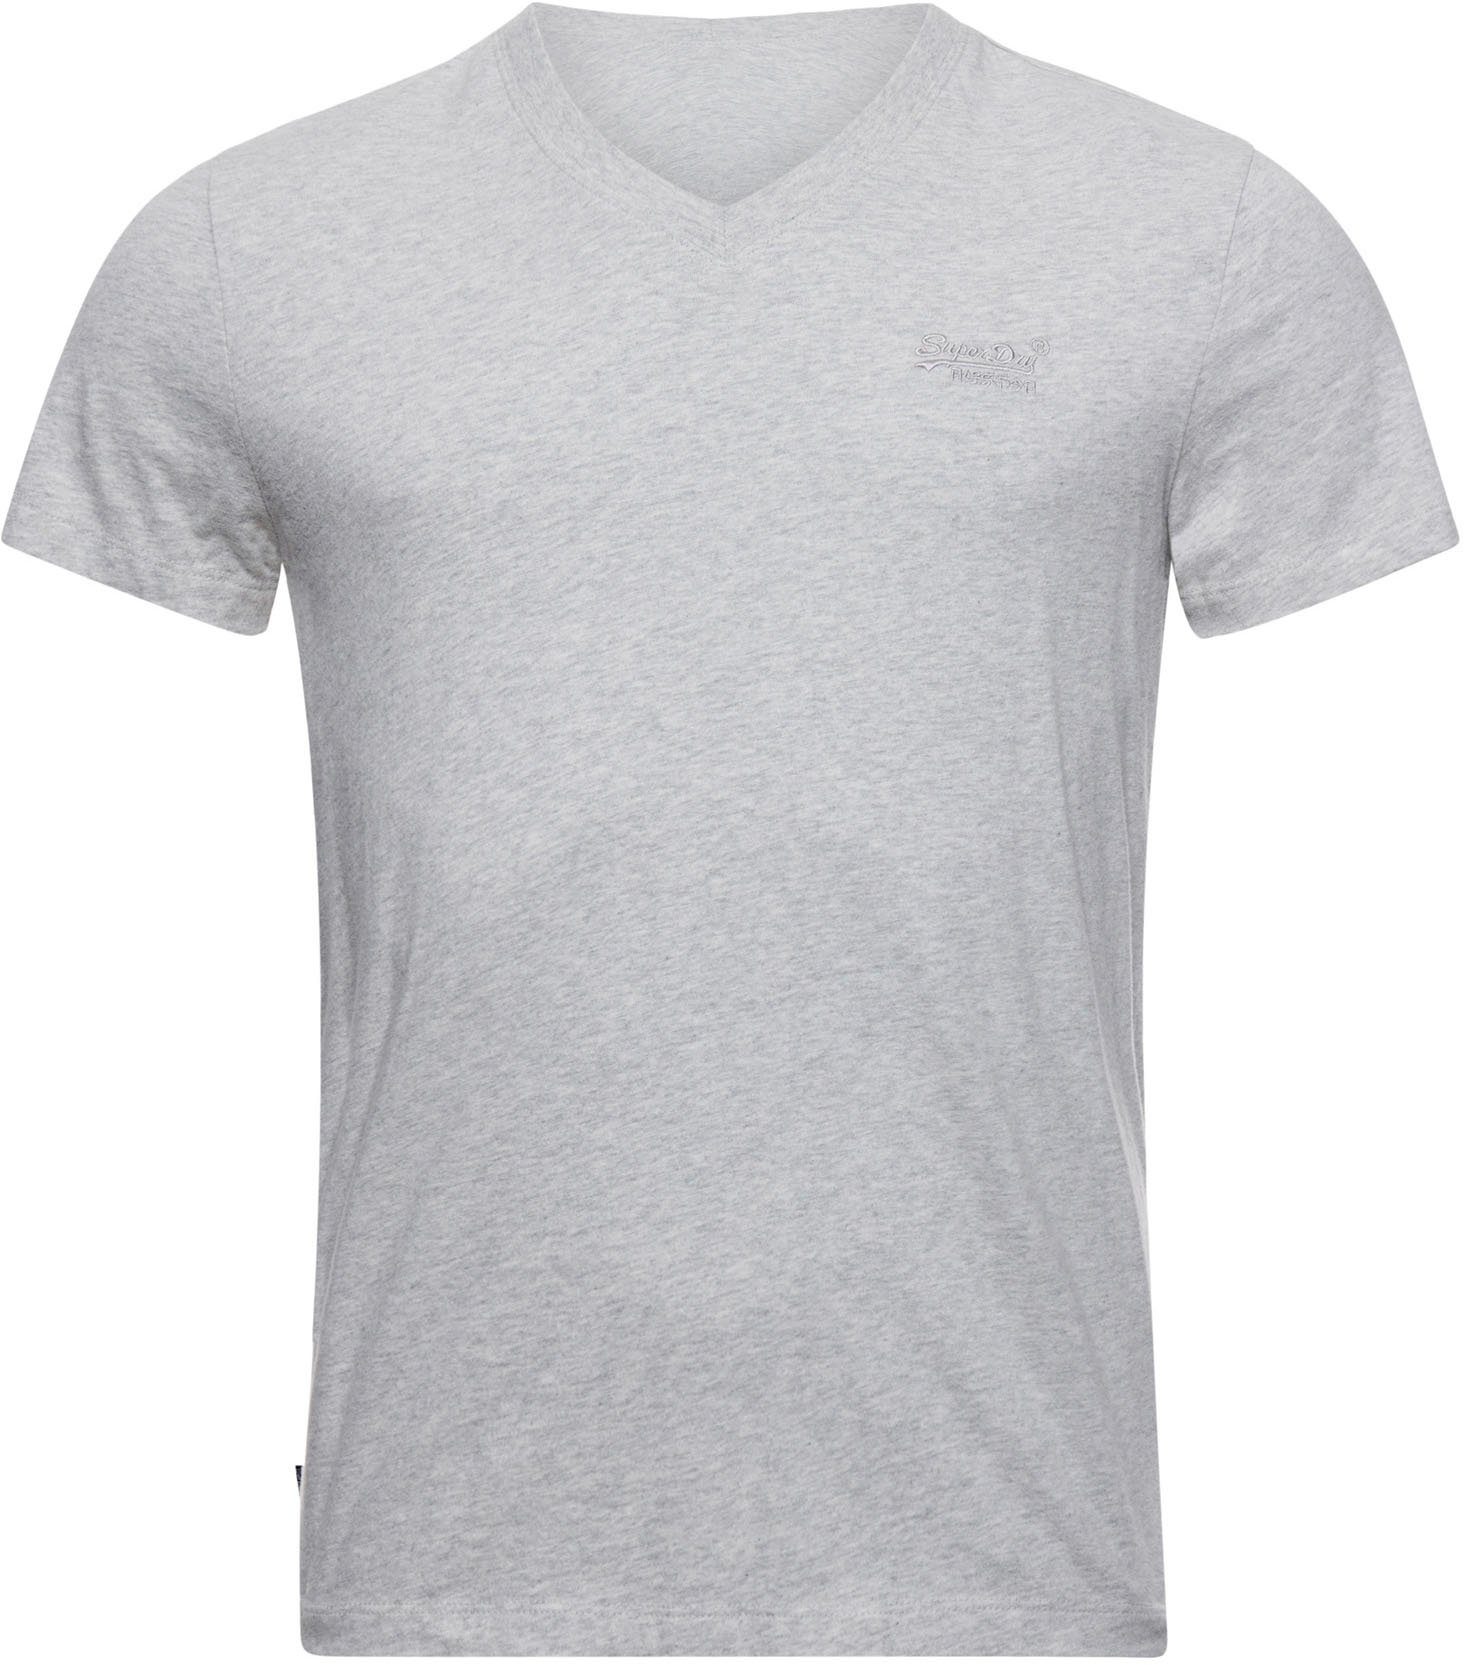 Superdry V-Shirt VINTAGE LOGO VEE grey marl EMB athletic